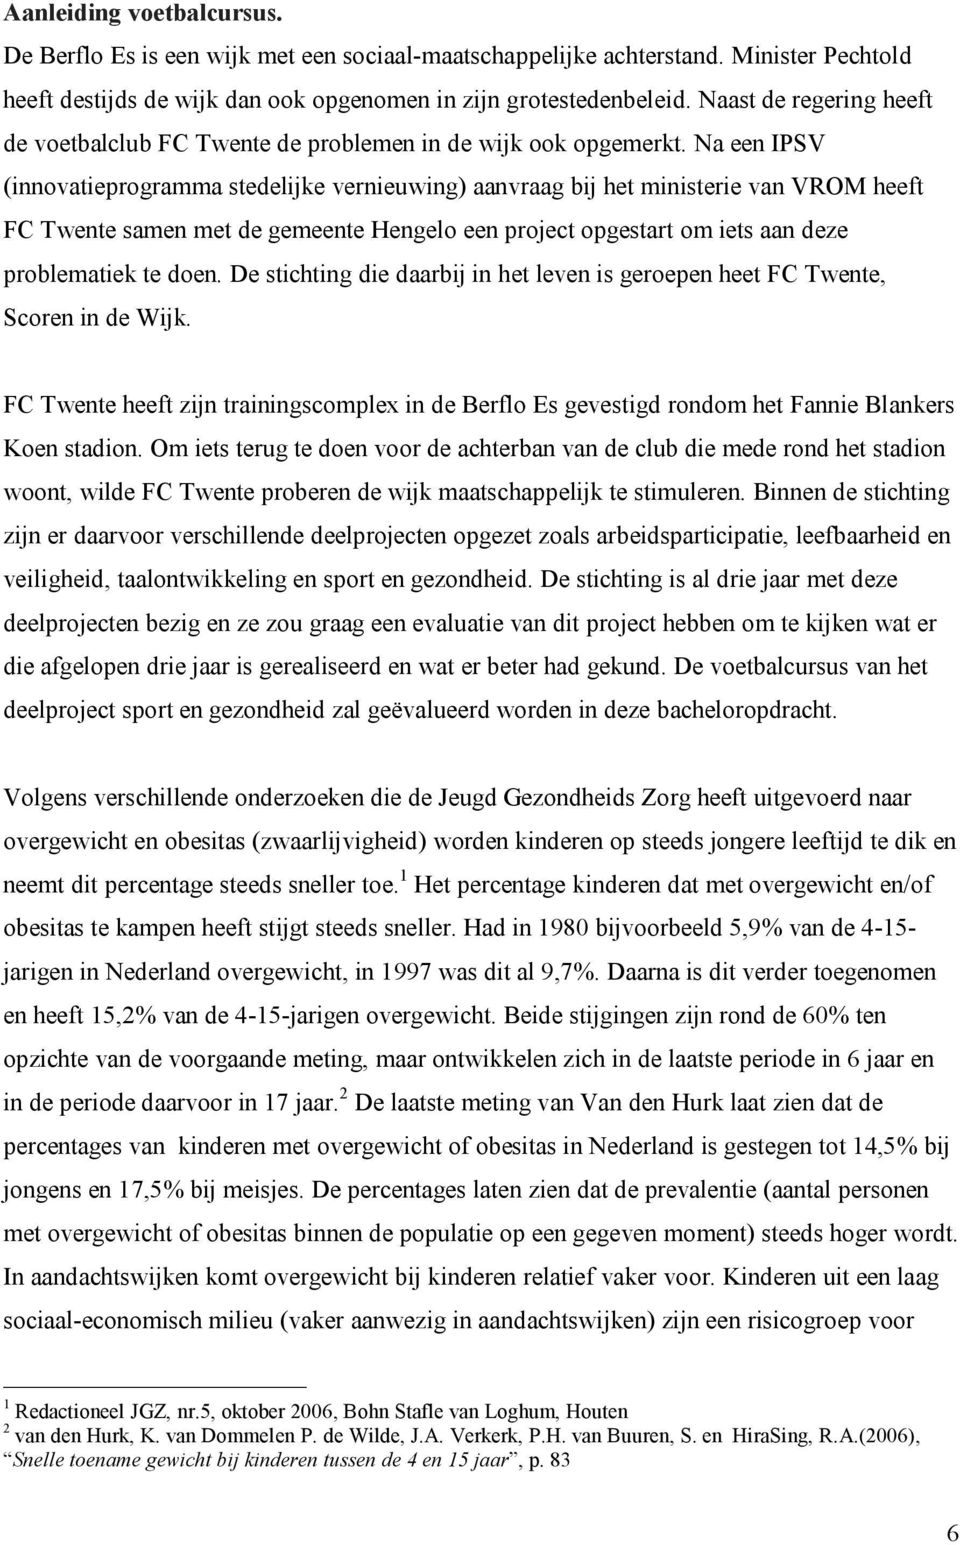 Na een IPSV (innovatieprogramma stedelijke vernieuwing) aanvraag bij het ministerie van VROM heeft FC Twente samen met de gemeente Hengelo een project opgestart om iets aan deze problematiek te doen.